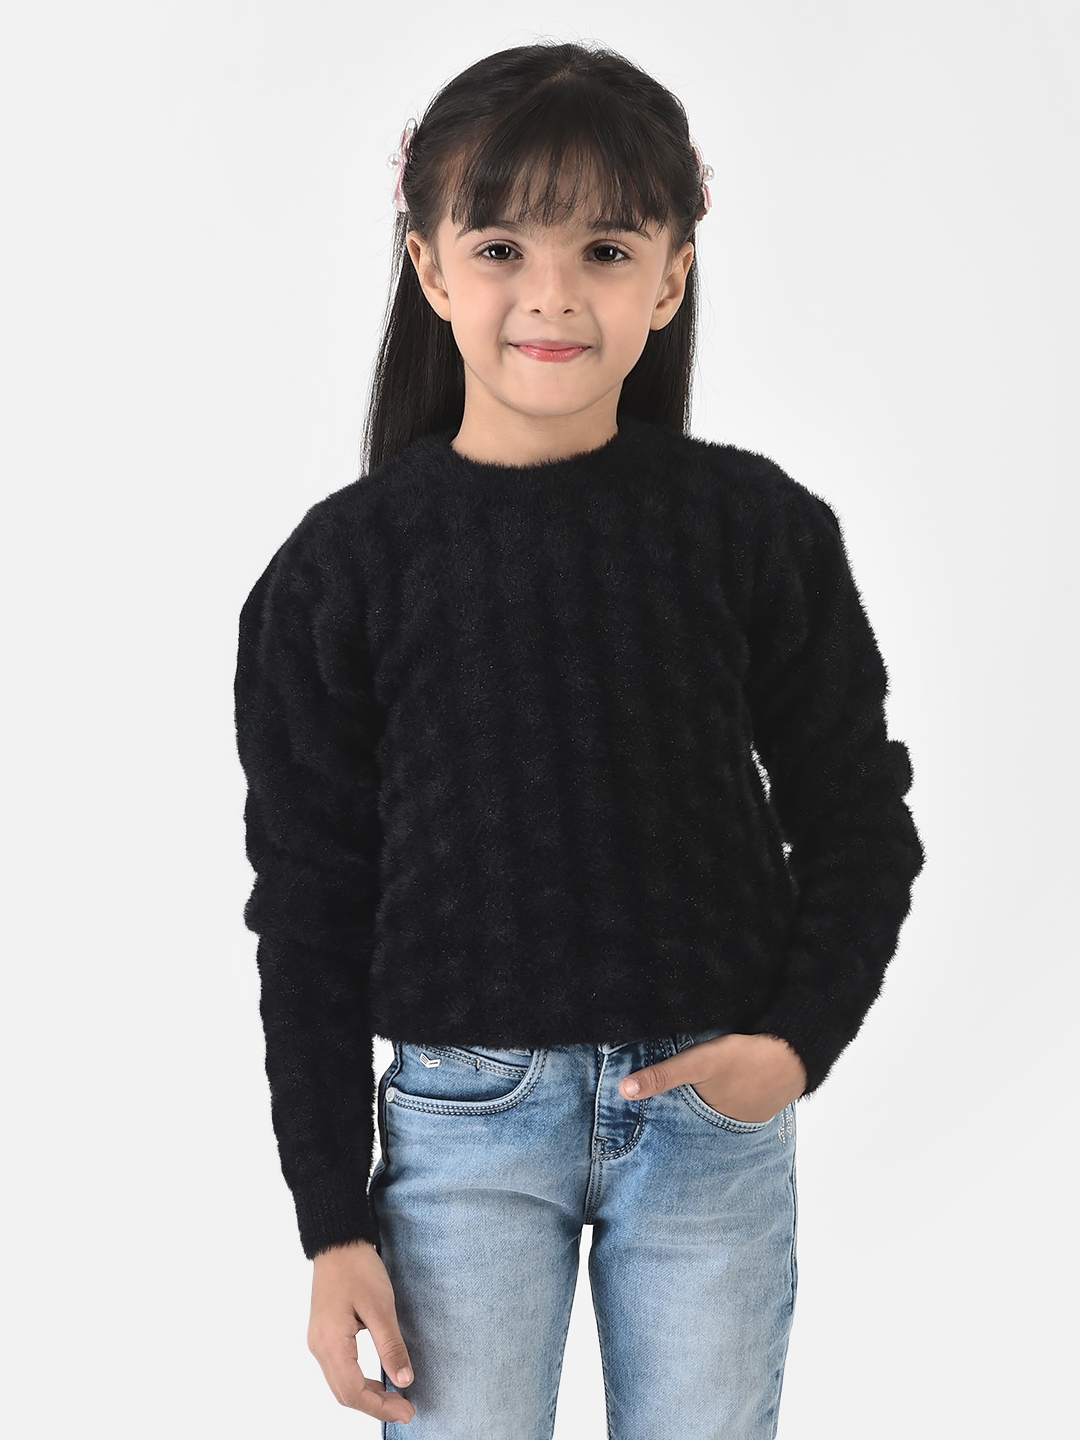 Crimsoune Club | Crimsoune Club Girls Black Sweater in Self-Designed Print